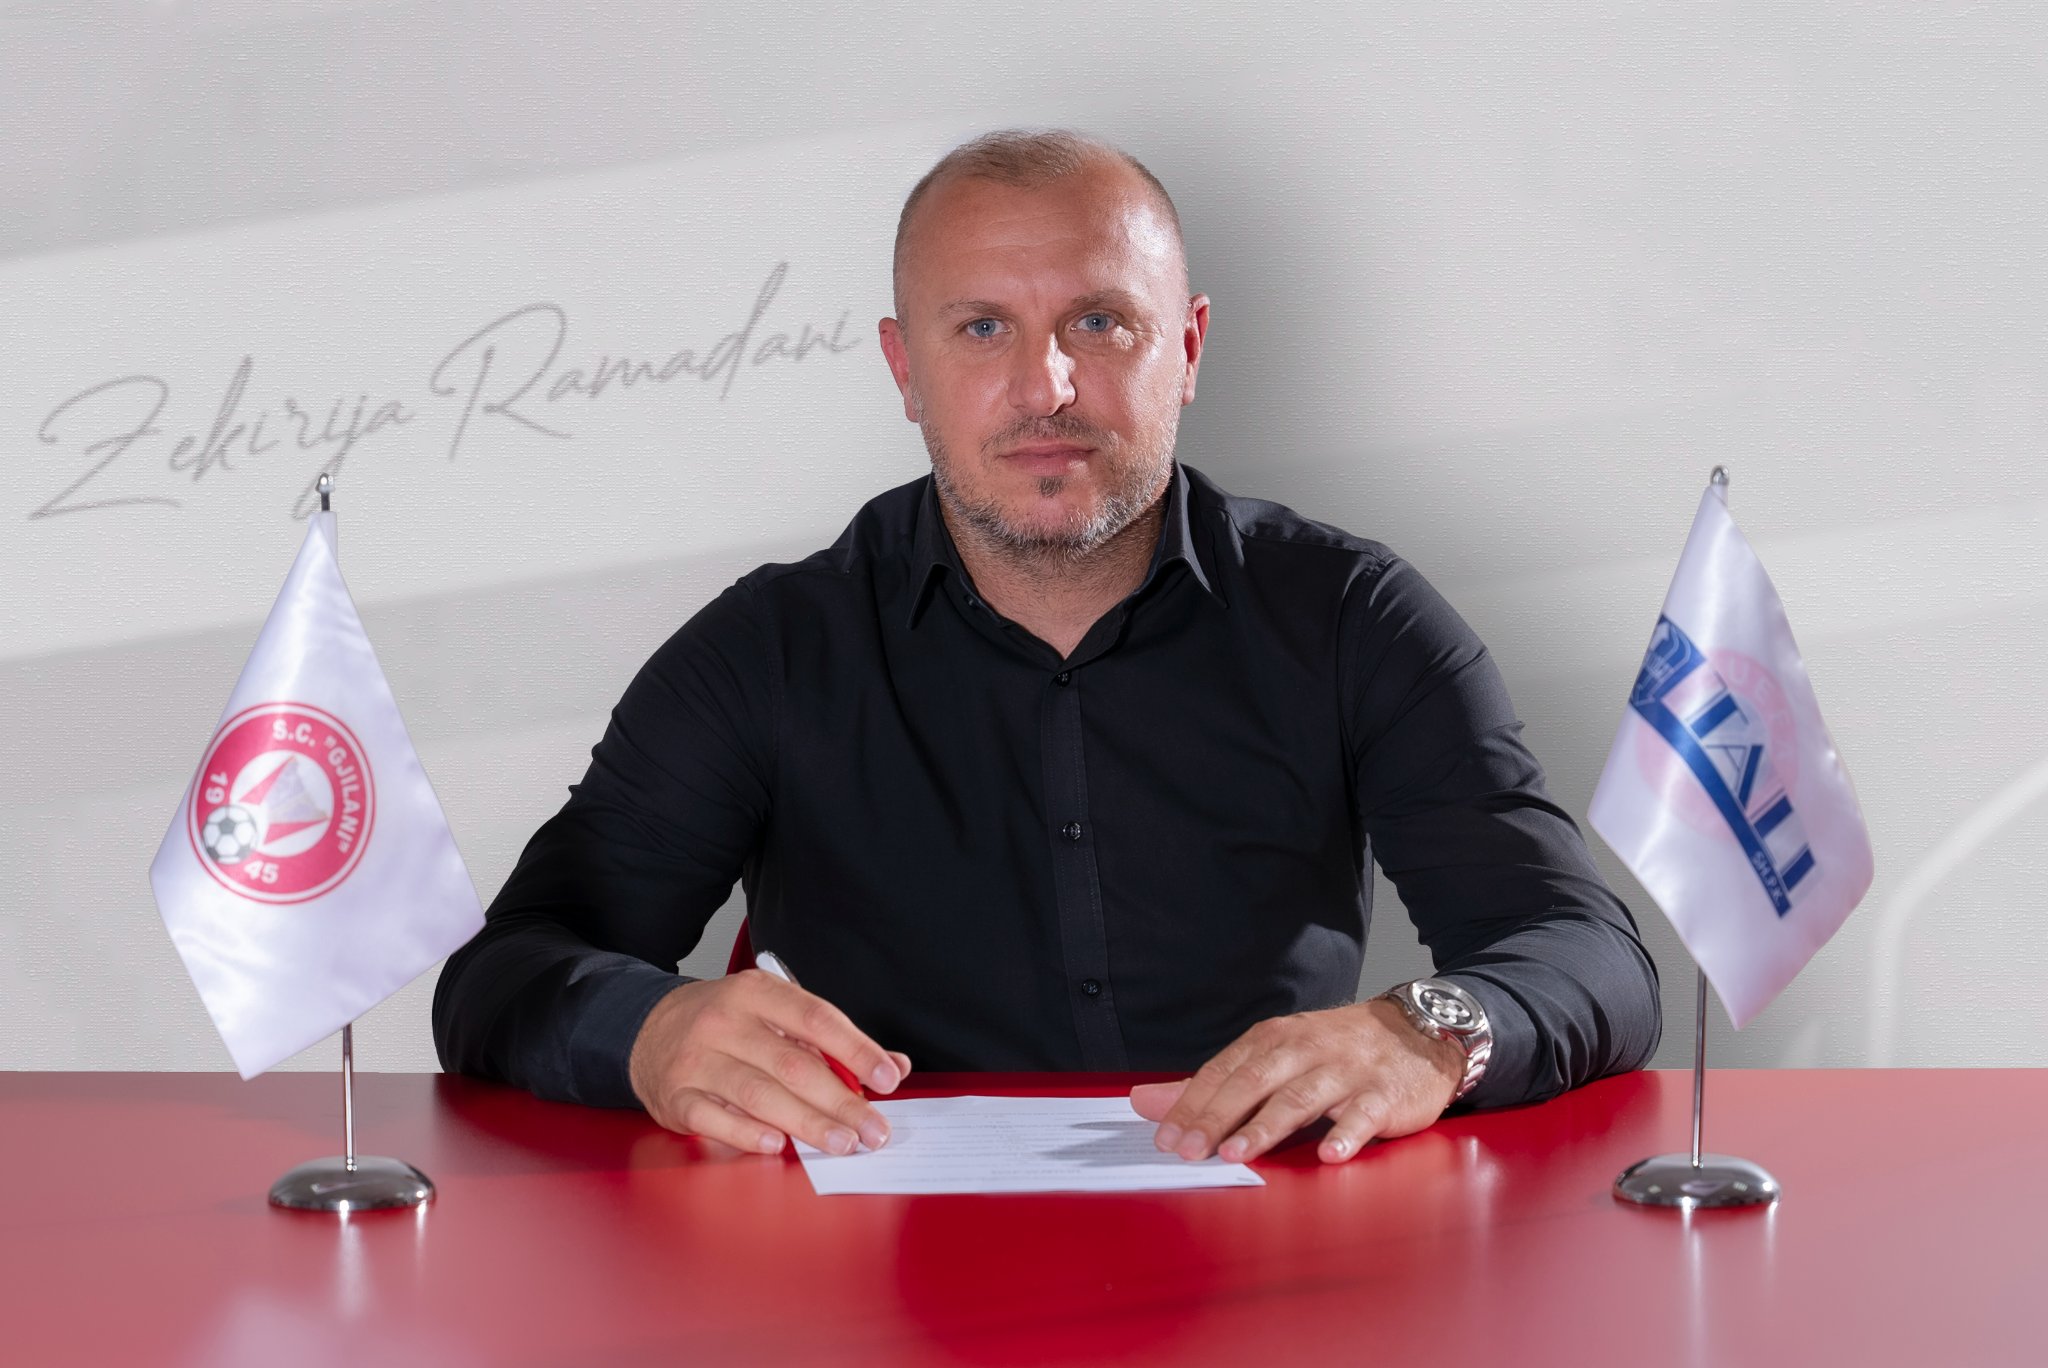 Zyrtare: Zekrija Ramadani trajner i Gjilanit